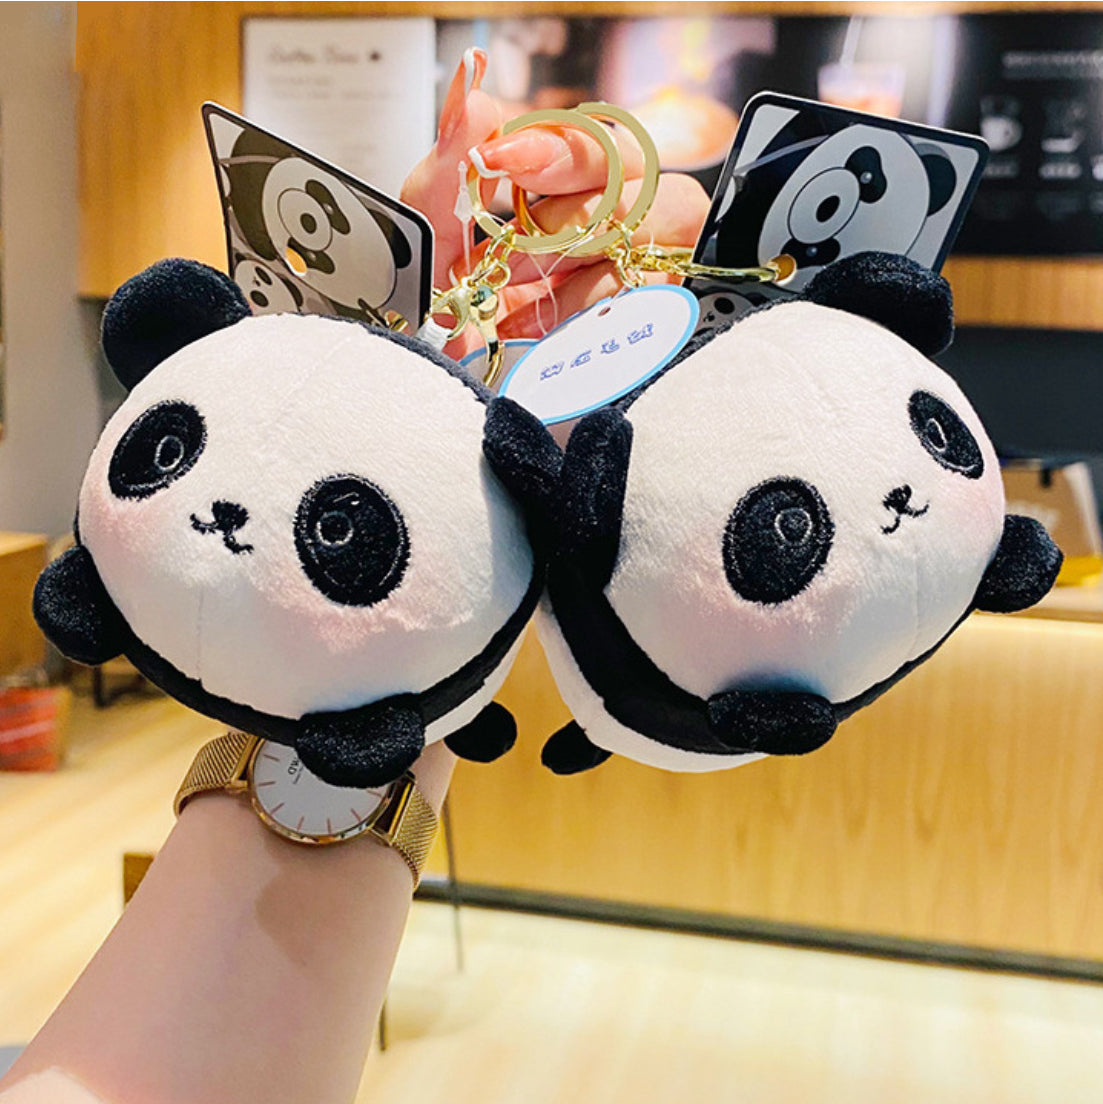 Porte-clés mignon panda